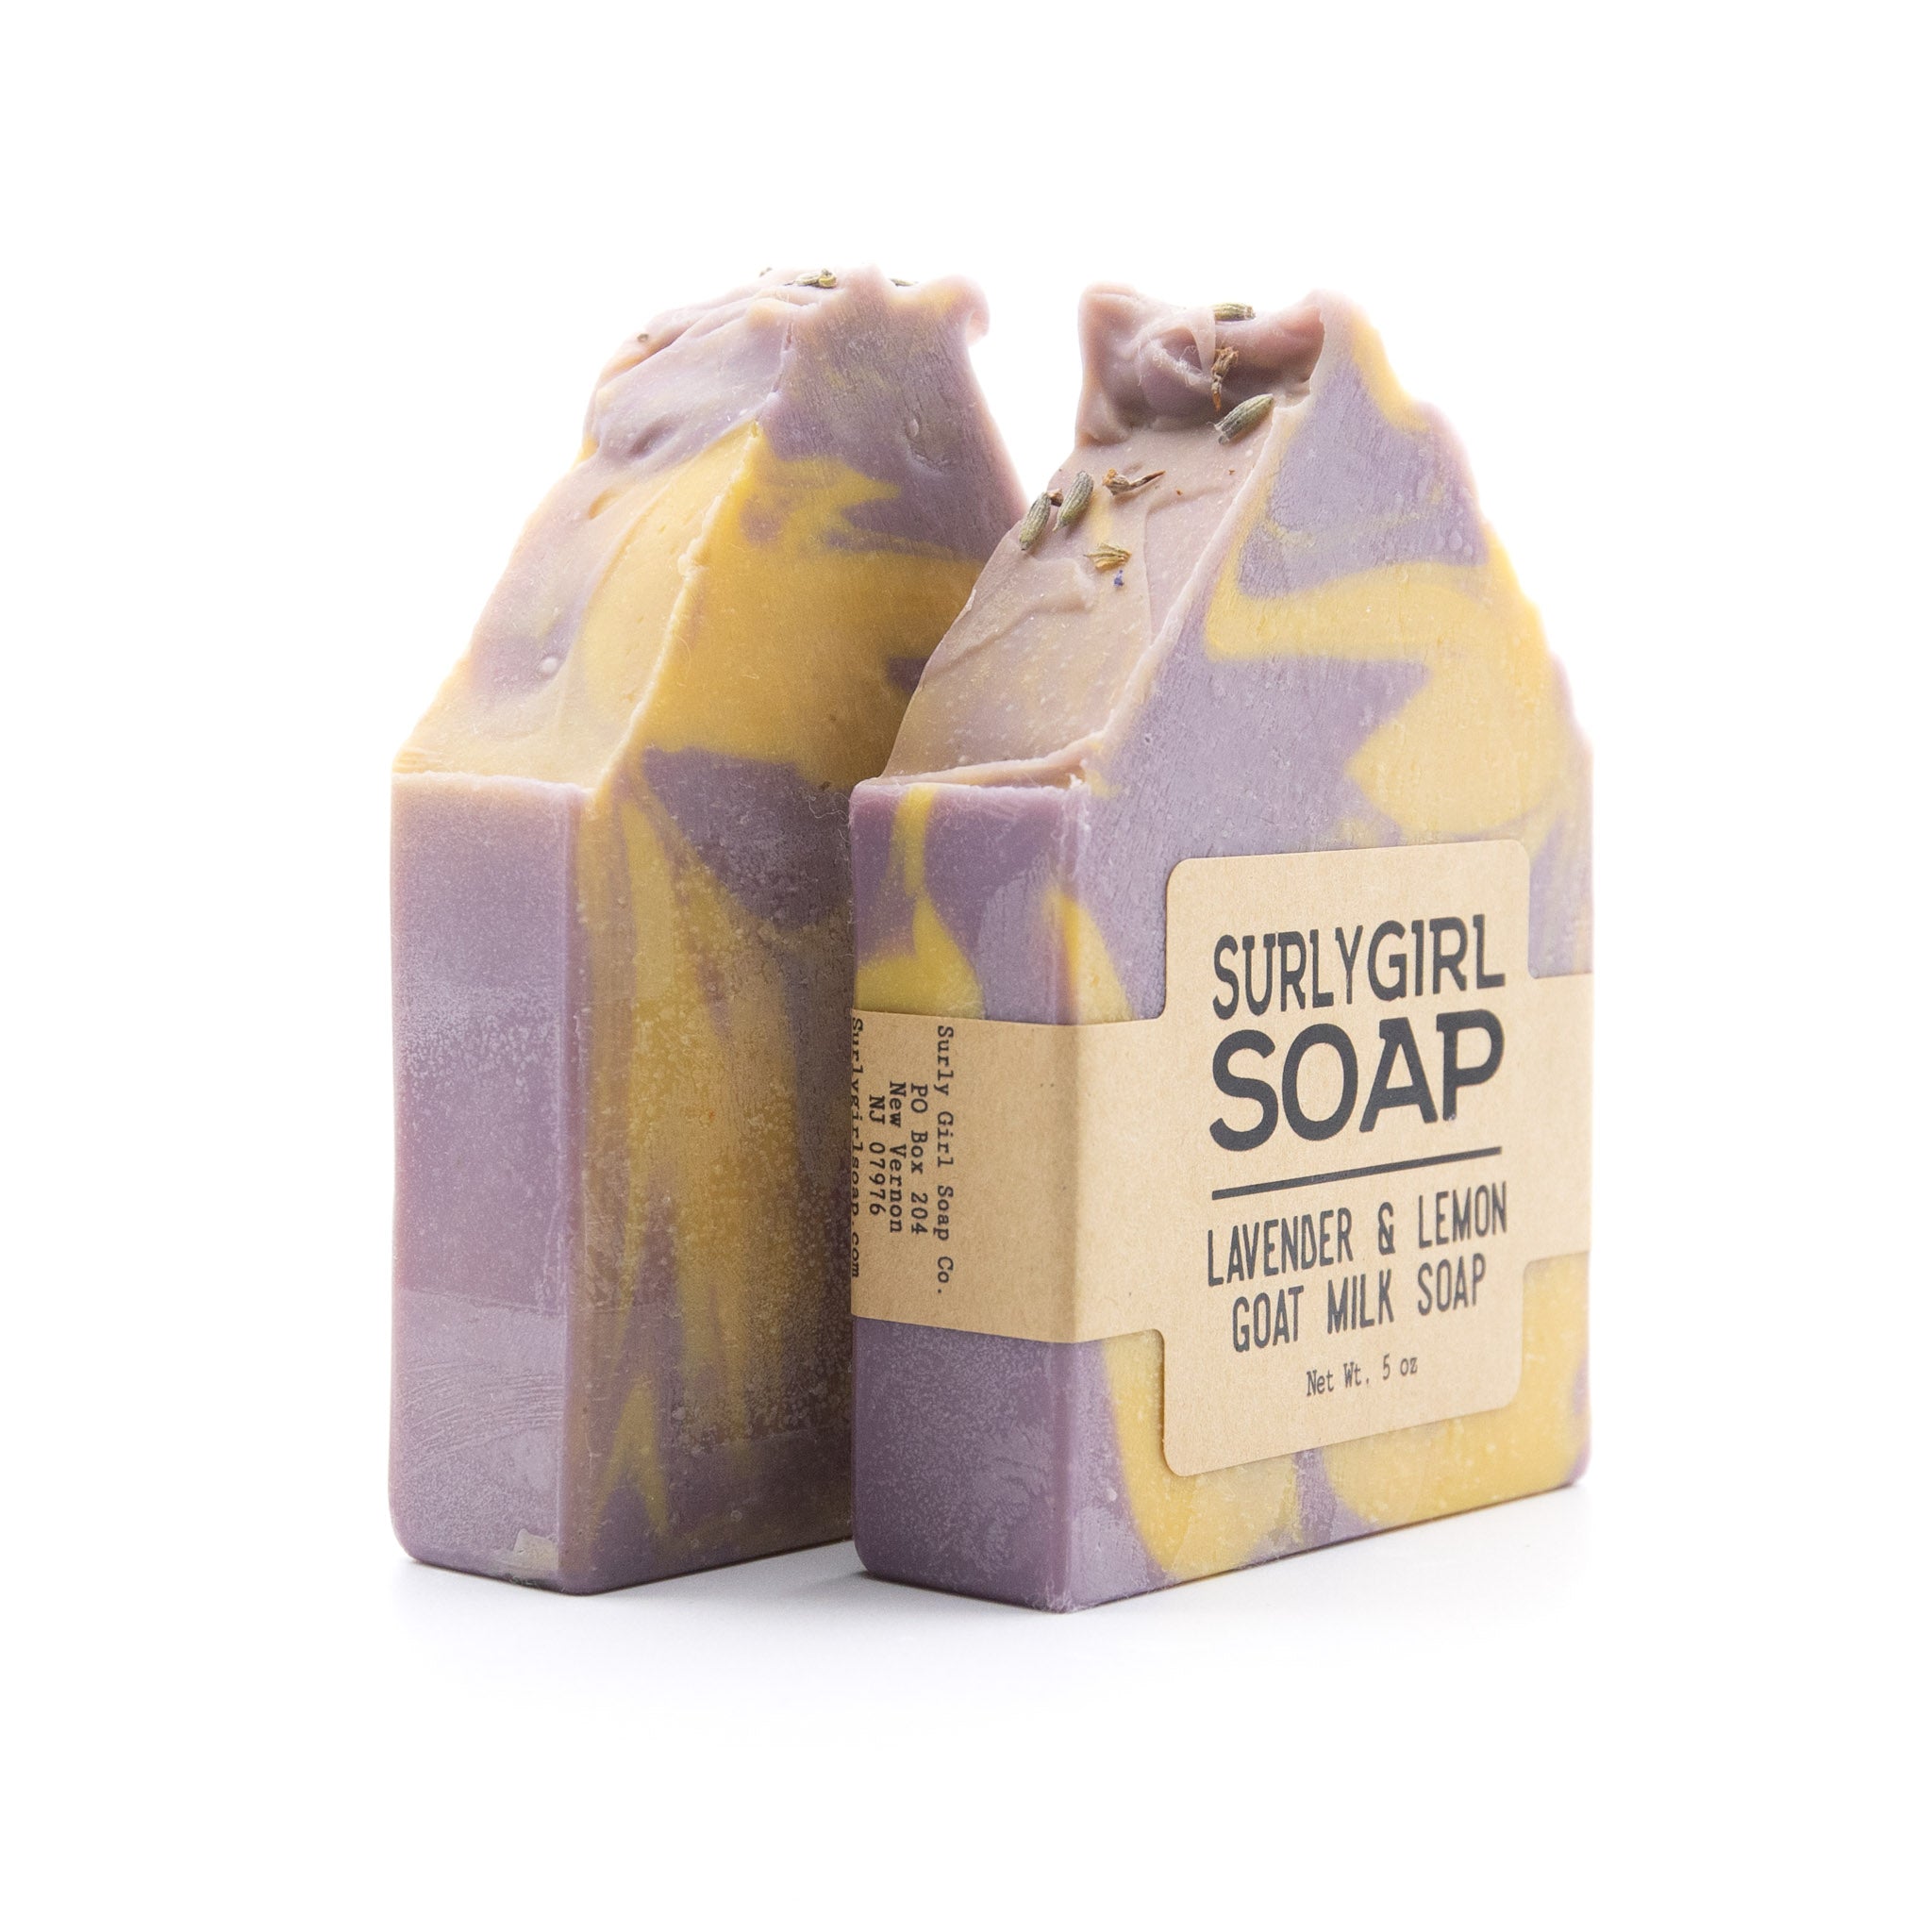 Lavender & Lemon Goat Milk Soap